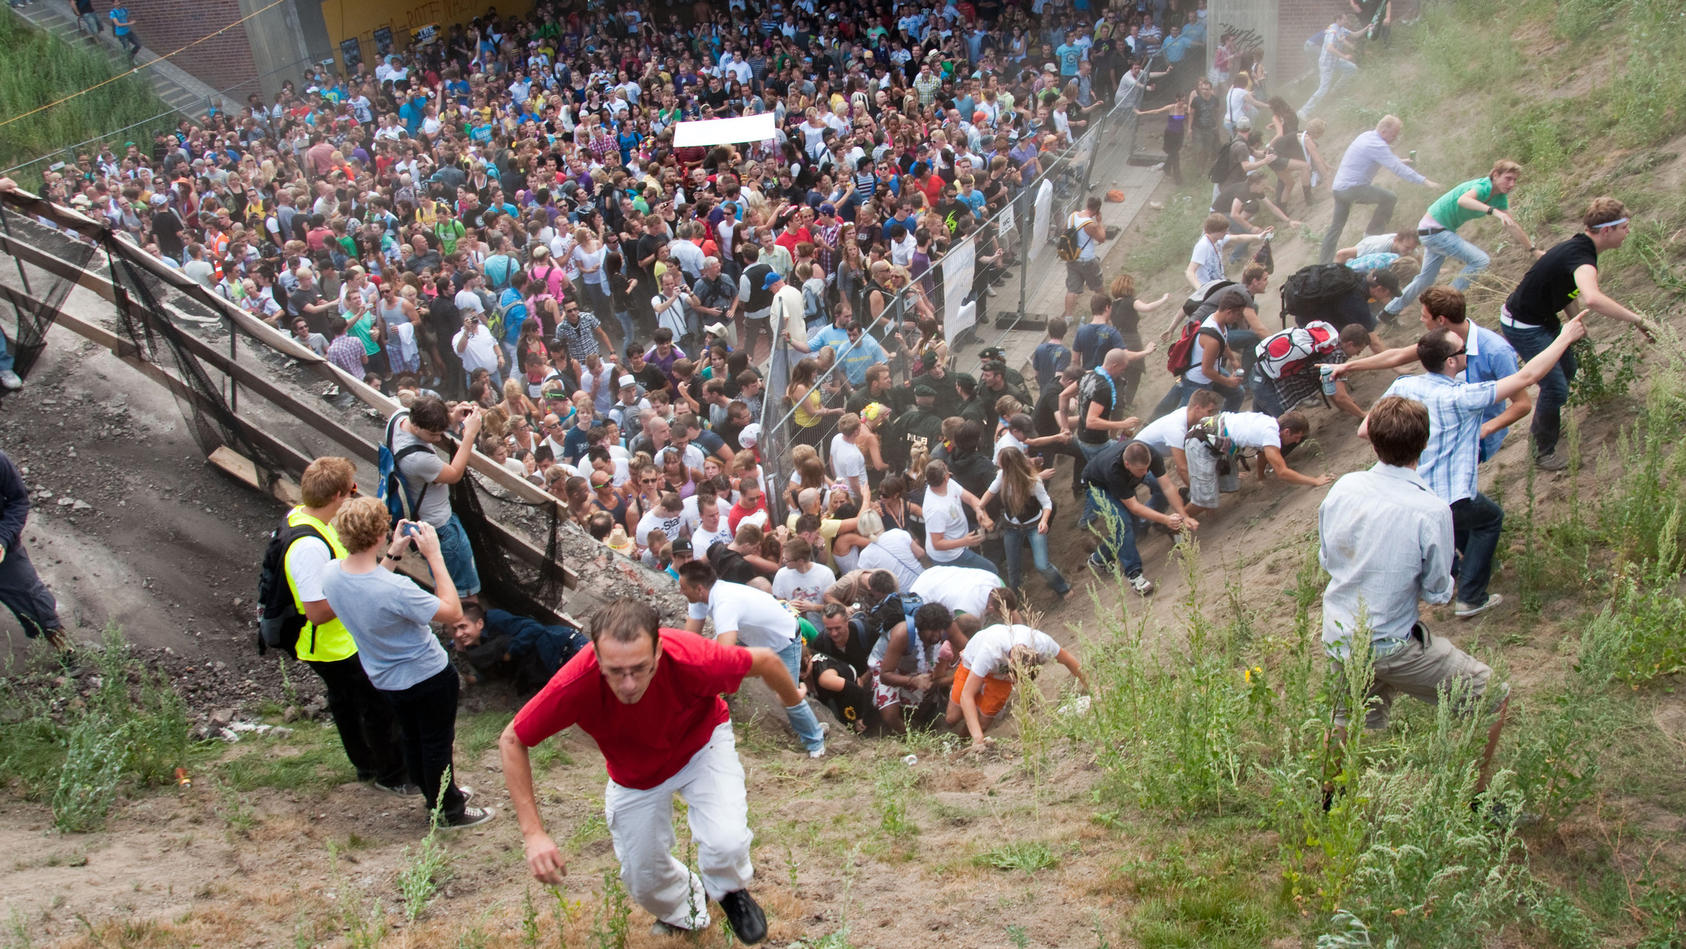 Bei der Loveparade im Juli 2010 in Duisburg wurden 21 junge Menschen zu Tode gedrückt.